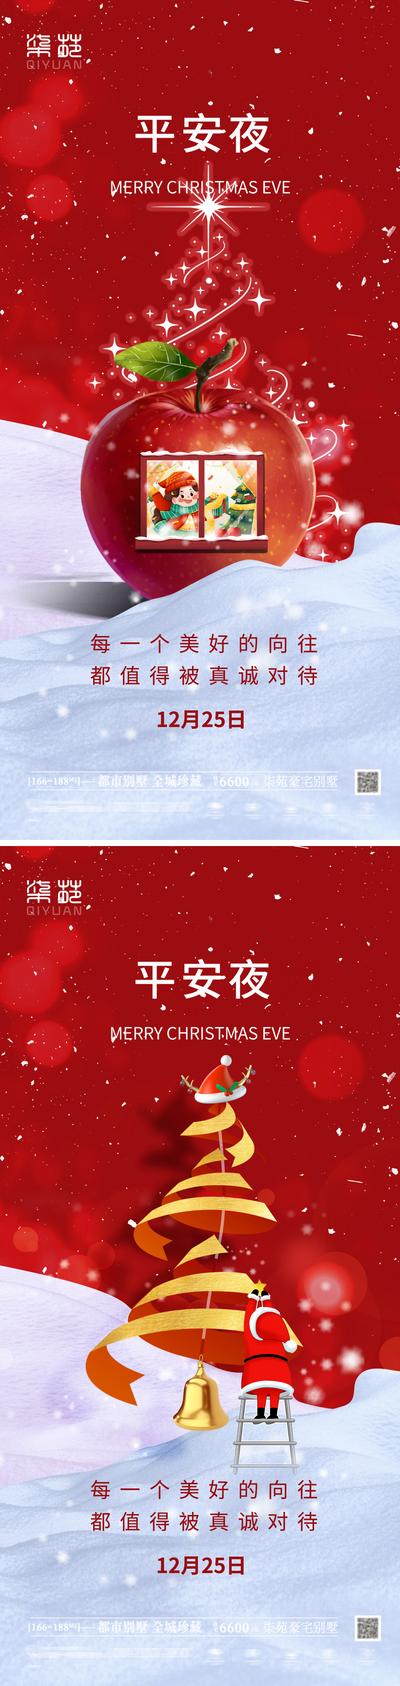 南门网 海报 地产 公历节日 圣诞节 平安夜 圣诞老人 苹果